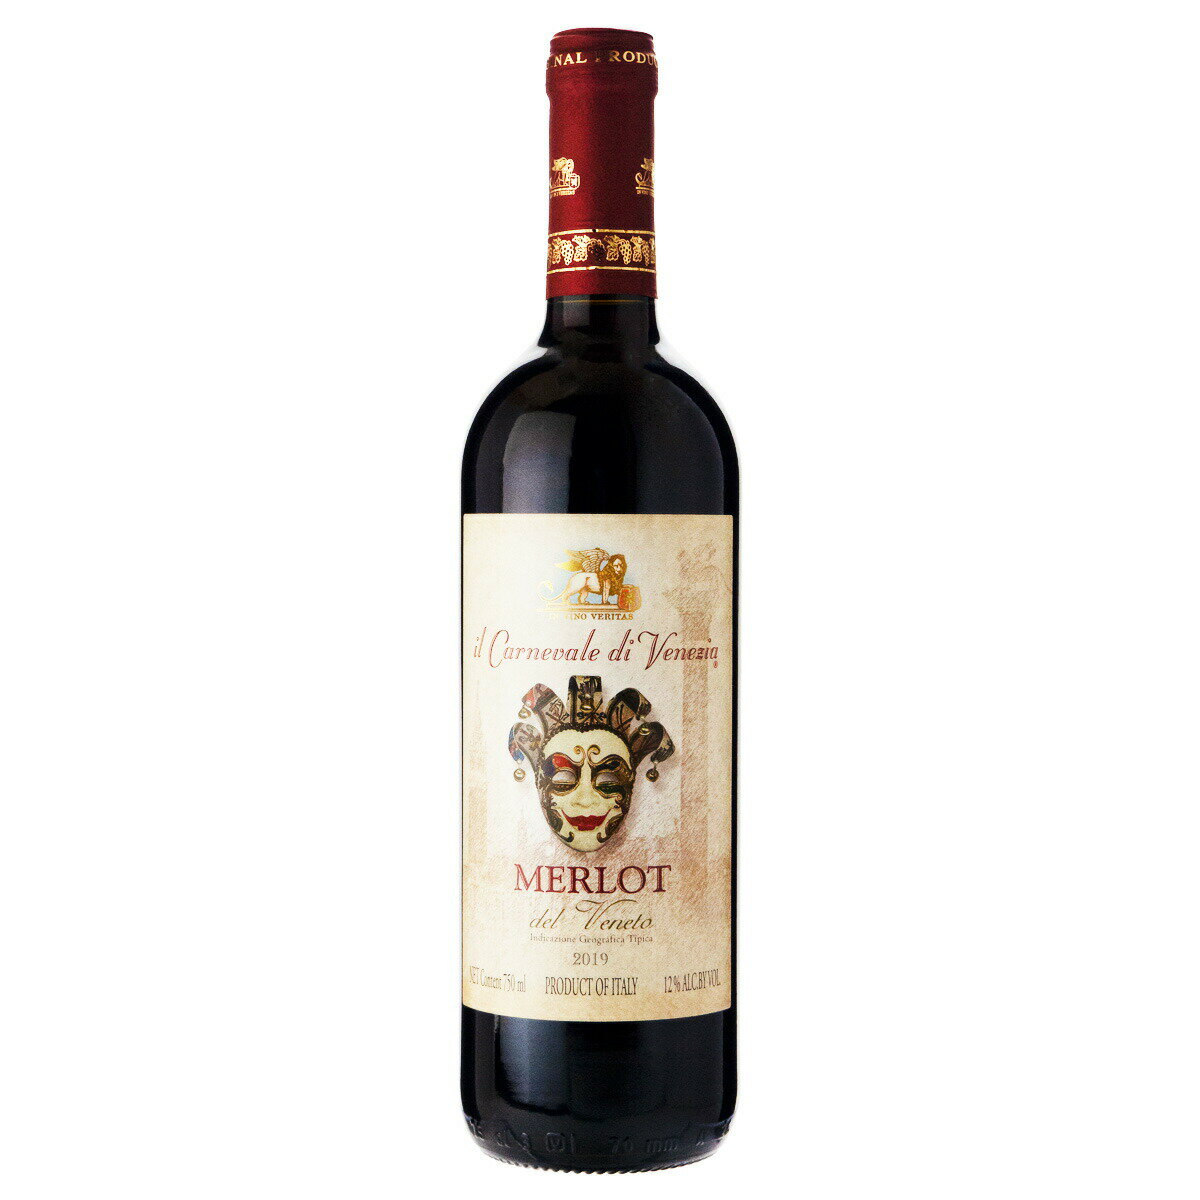 ナターレ ヴェルガ イル カルニヴァーレ ディ ヴェネツィア メルロー 2019 750ml 赤ワイン イタリア (j03-3816)